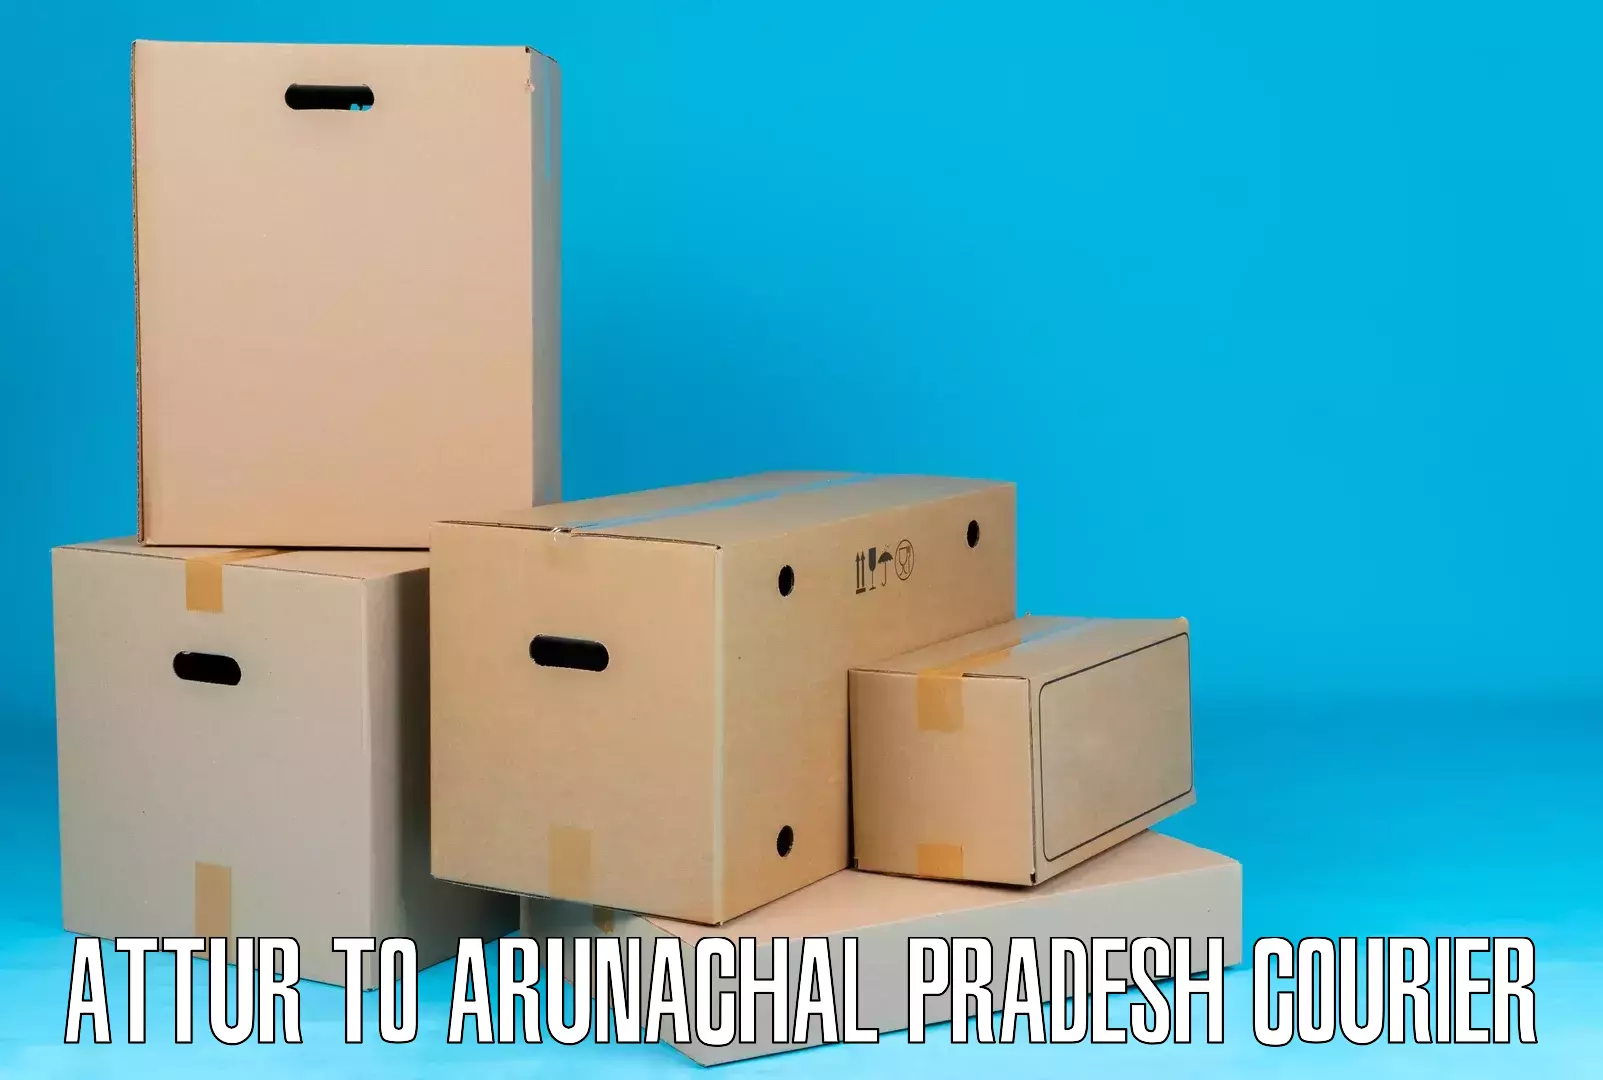 Multi-national courier services Attur to Arunachal Pradesh